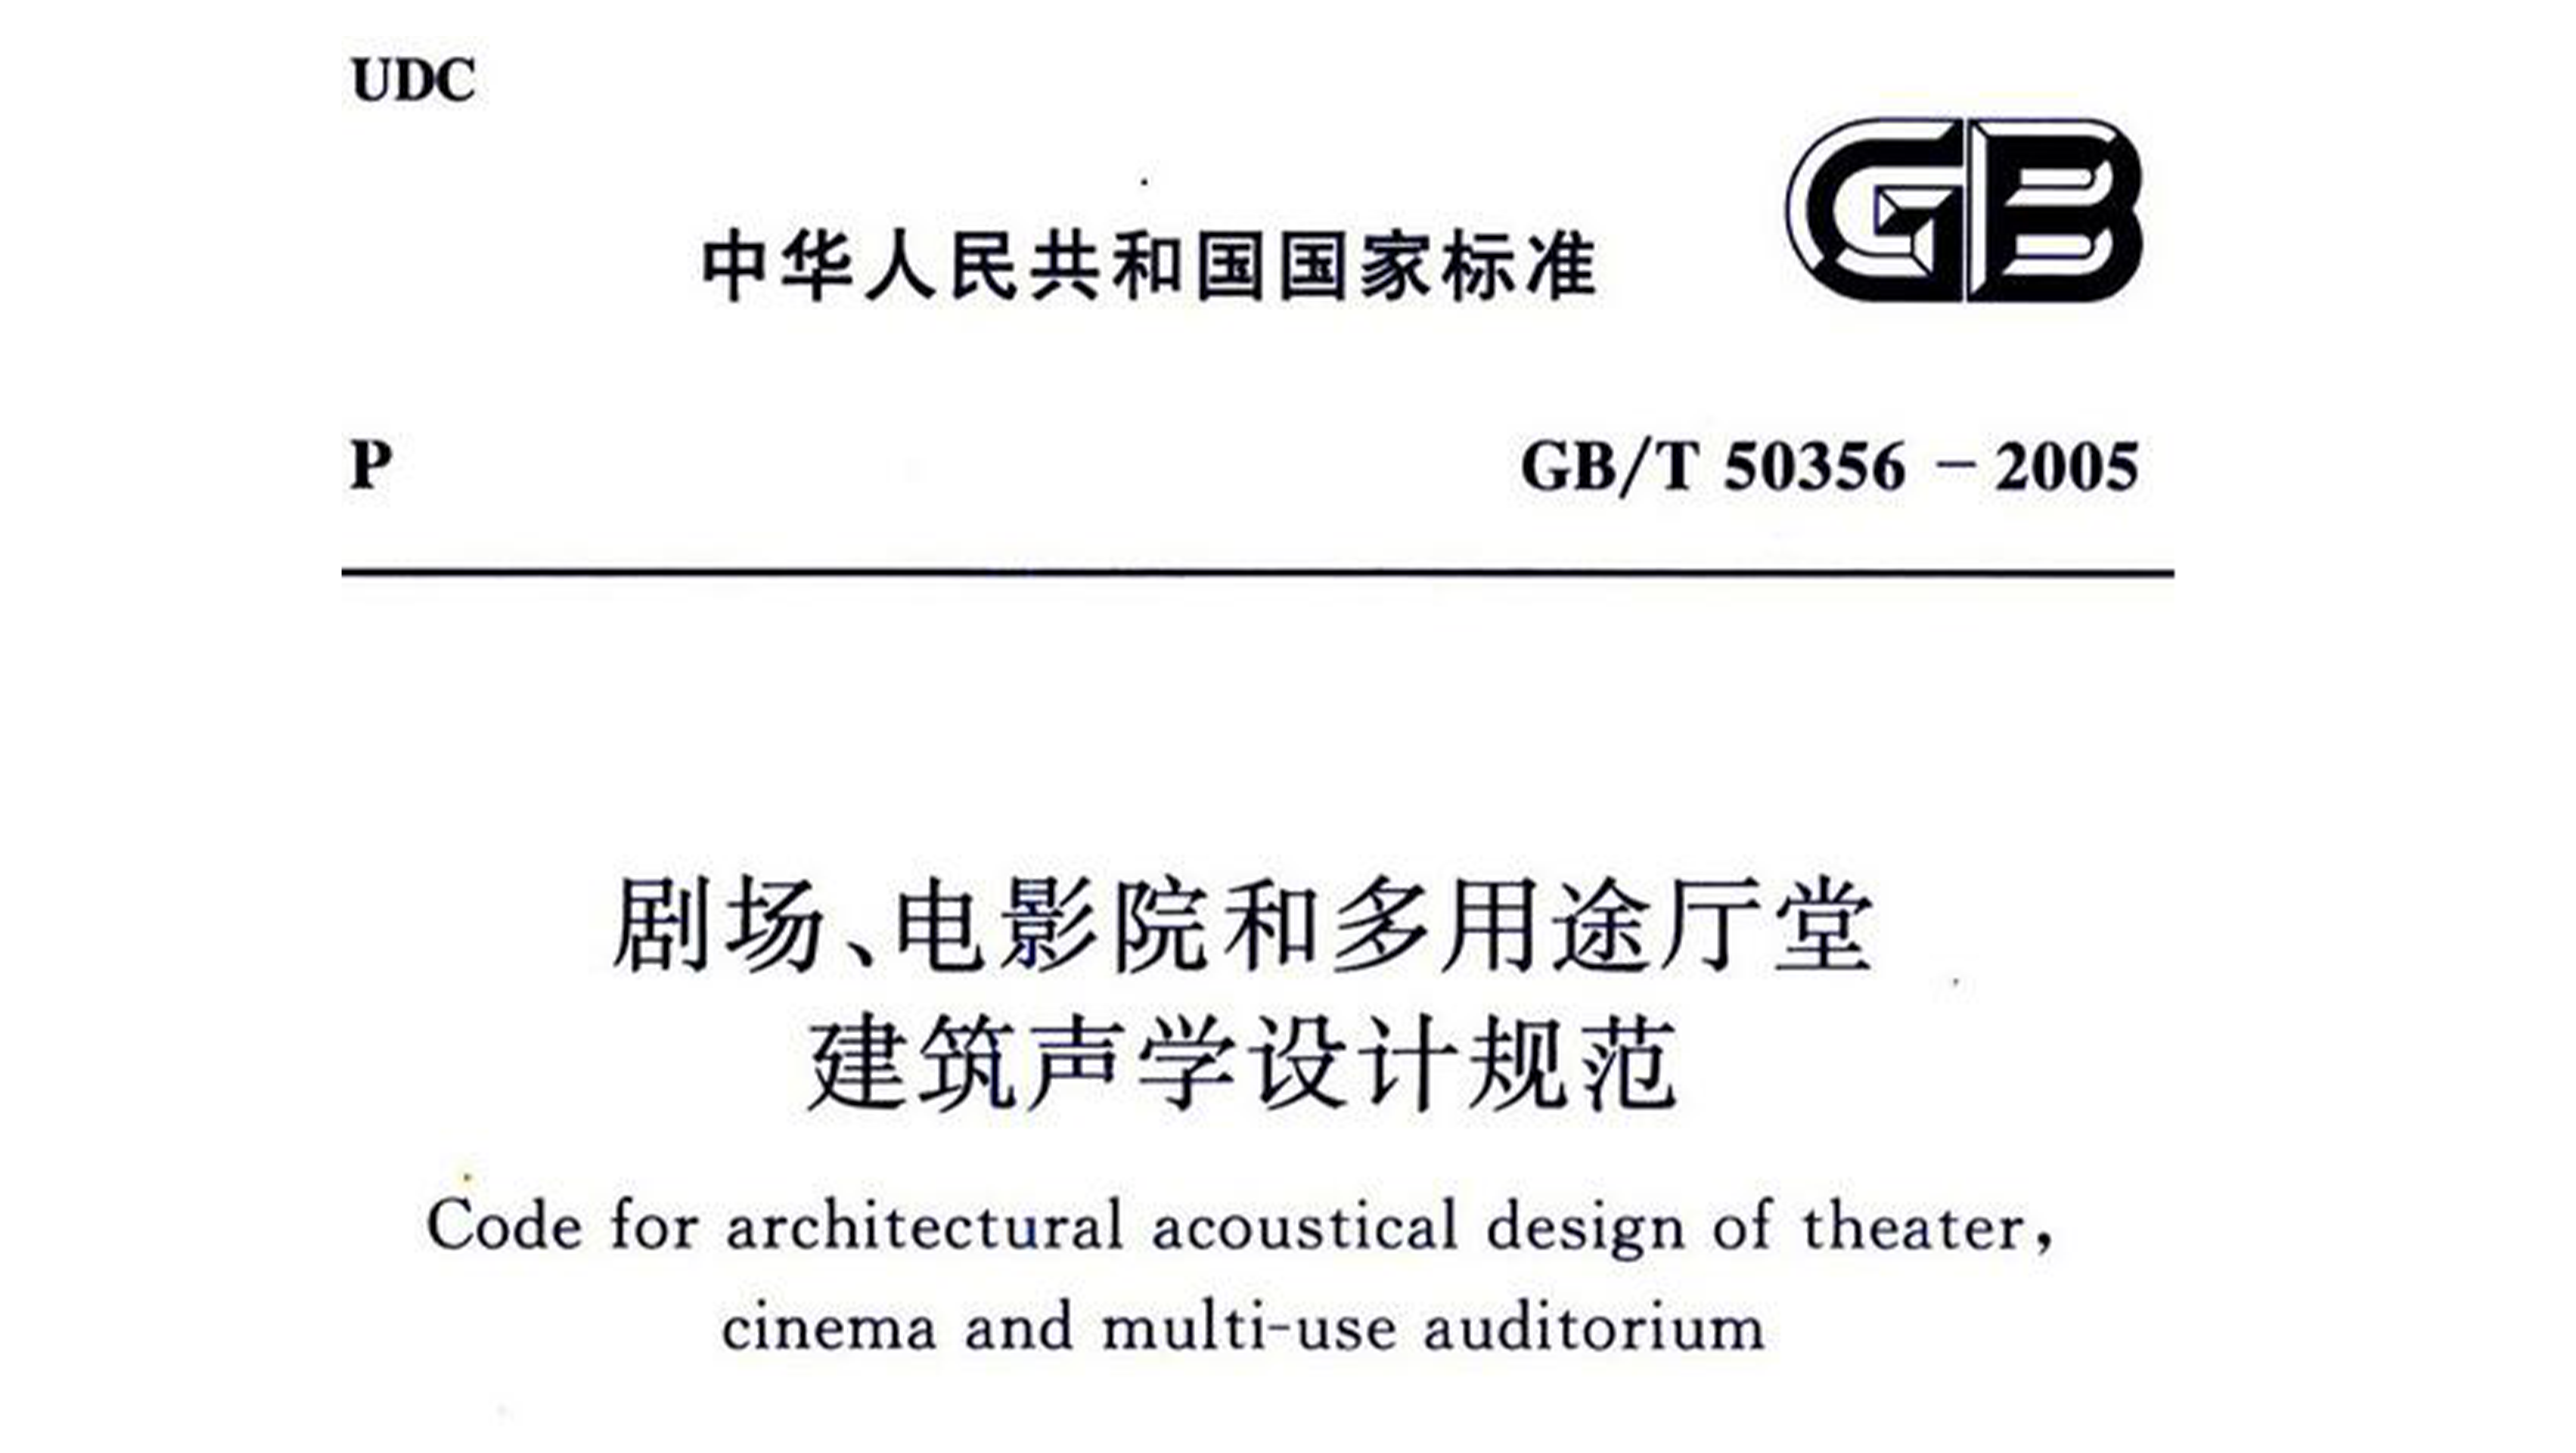 剧场、电影院和多用途厅堂建筑声学设计规范GB/T 50356-2005